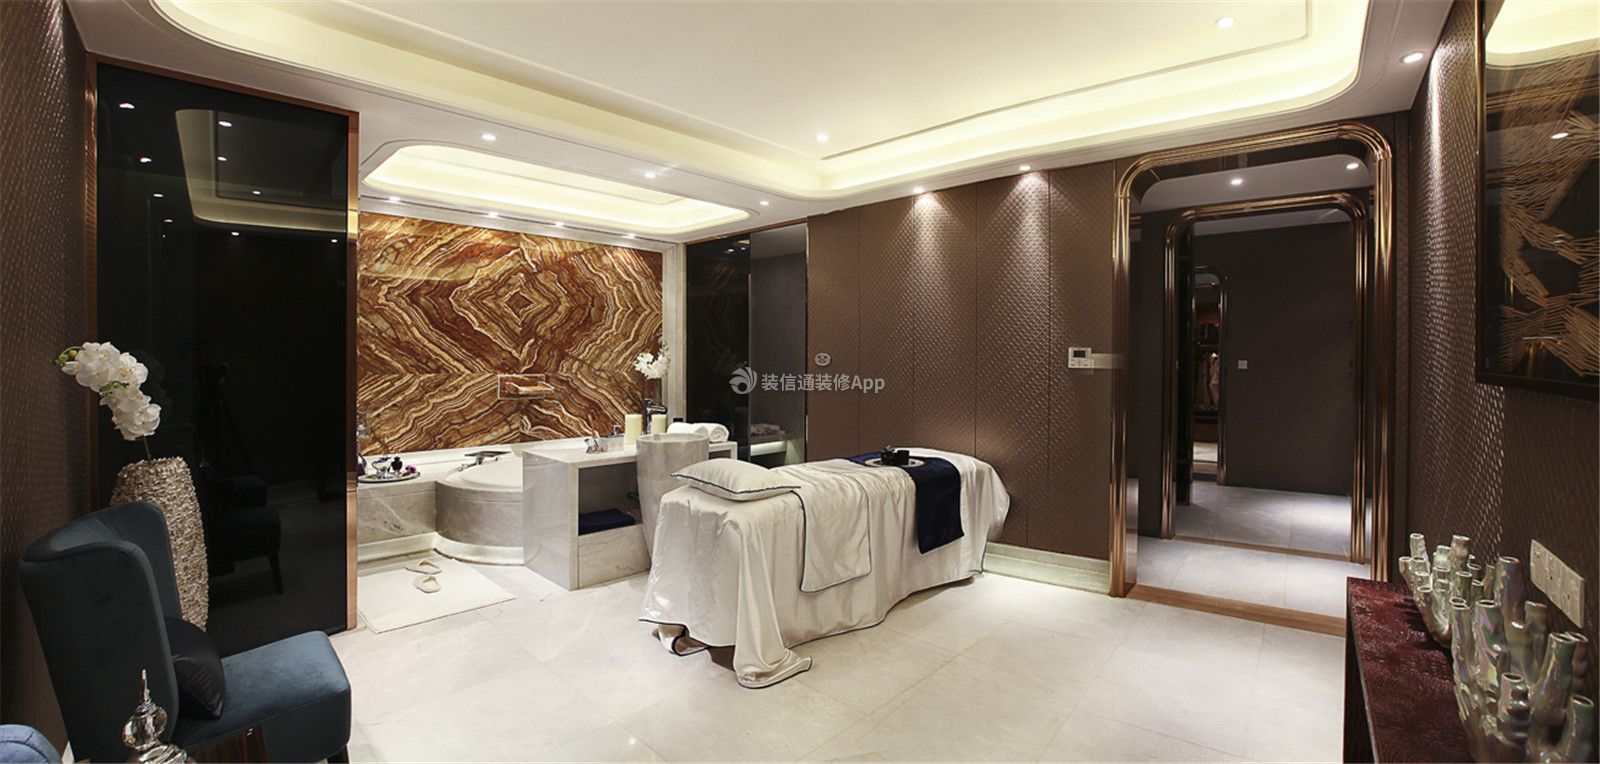 现代简约风格308平米别墅大浴室设计图片